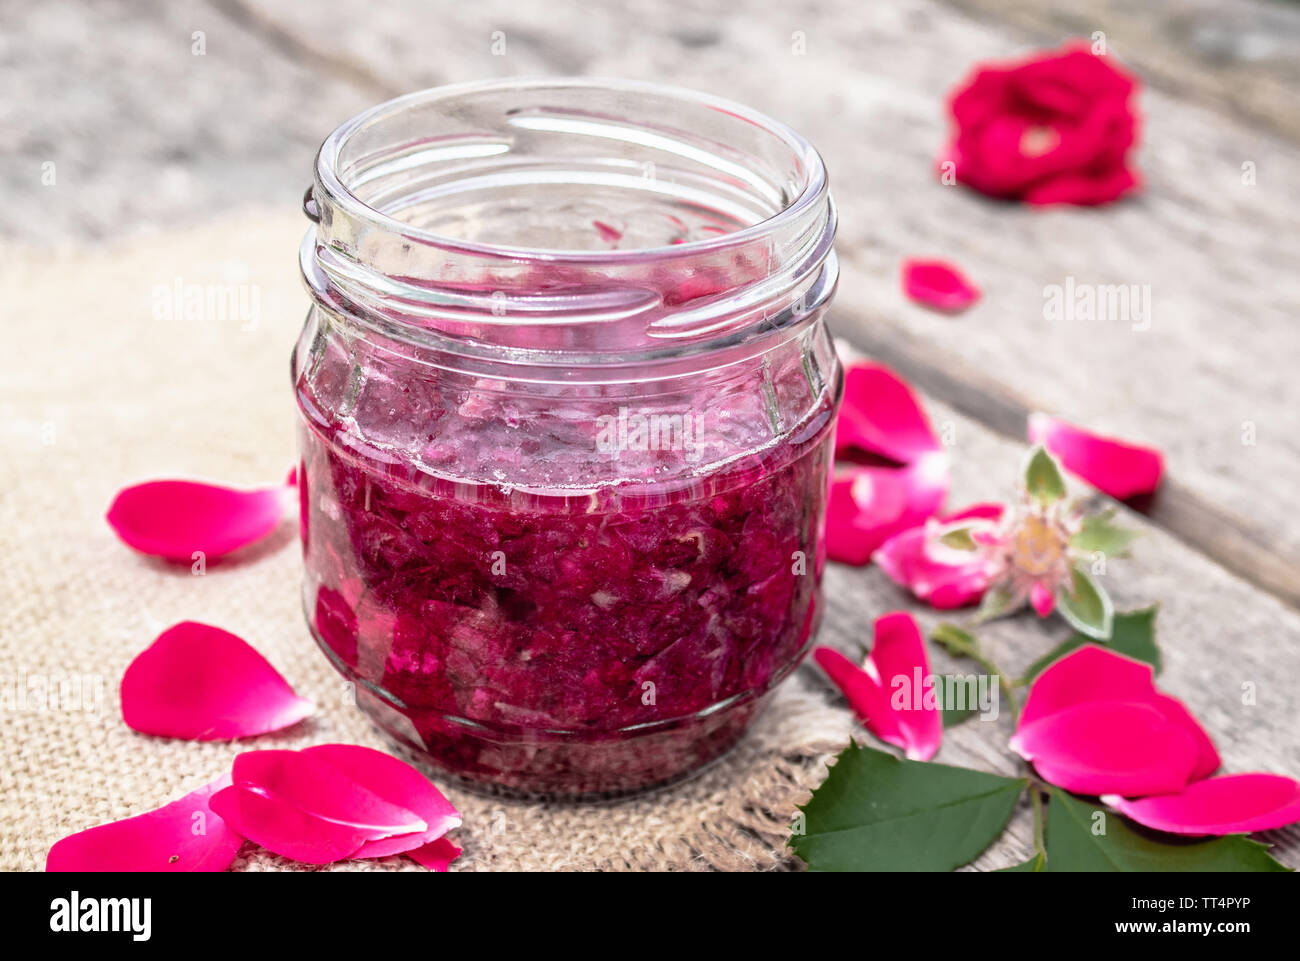 Confiture de pétales de rose sur une table en bois. Confiture de fleurs. Alimentation saine. Copy space Banque D'Images